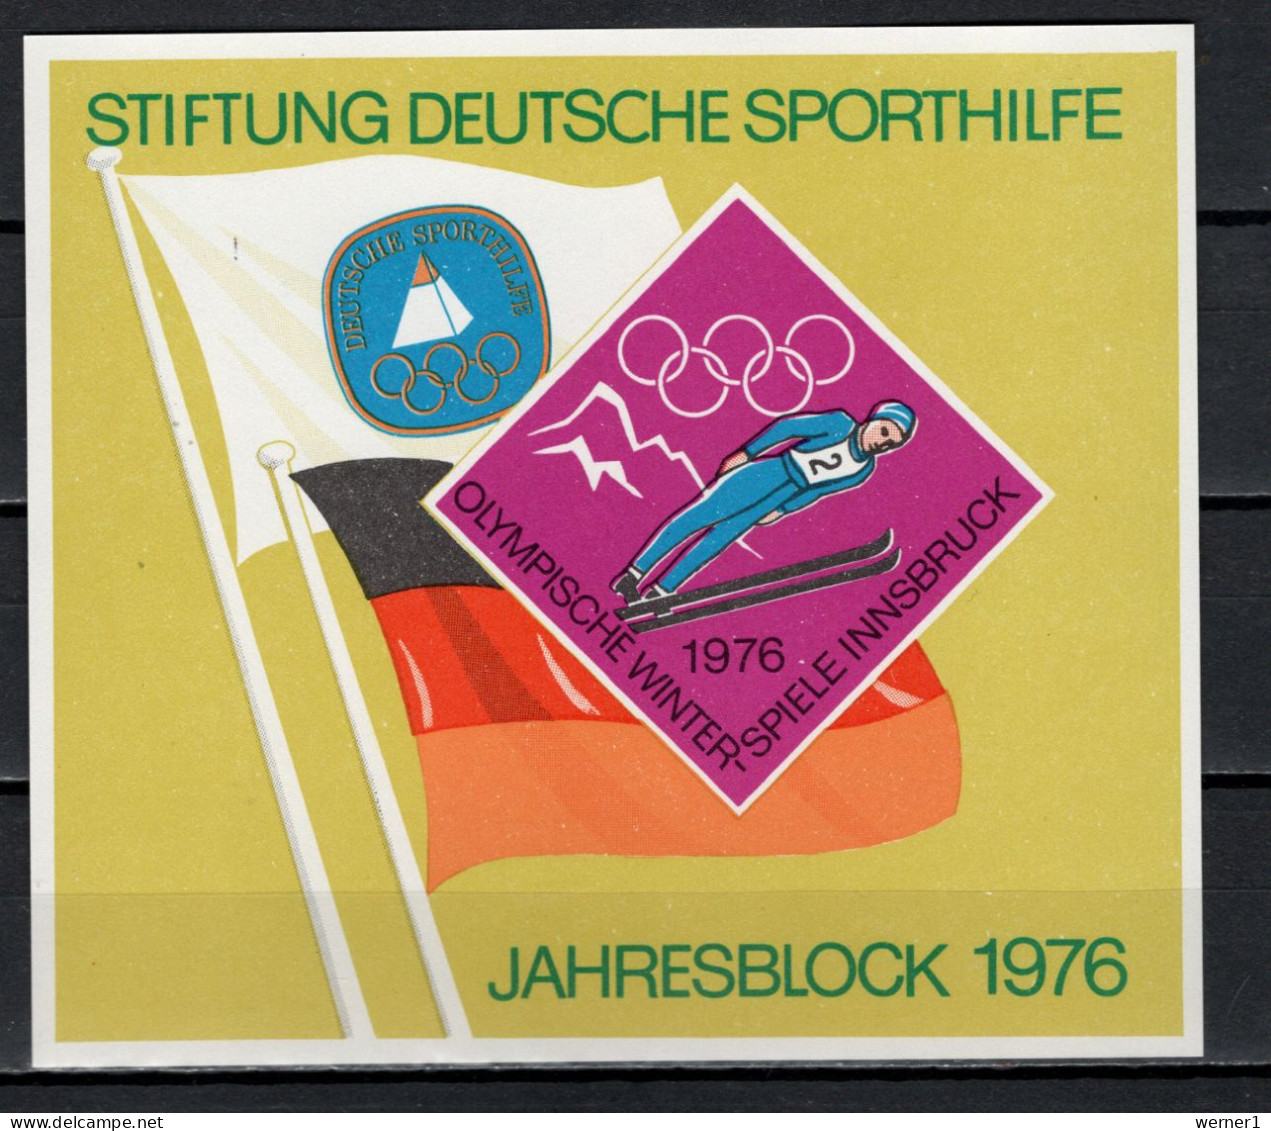 Germany 1976 Olympic Games Innsbruck Vignette MNH - Hiver 1976: Innsbruck